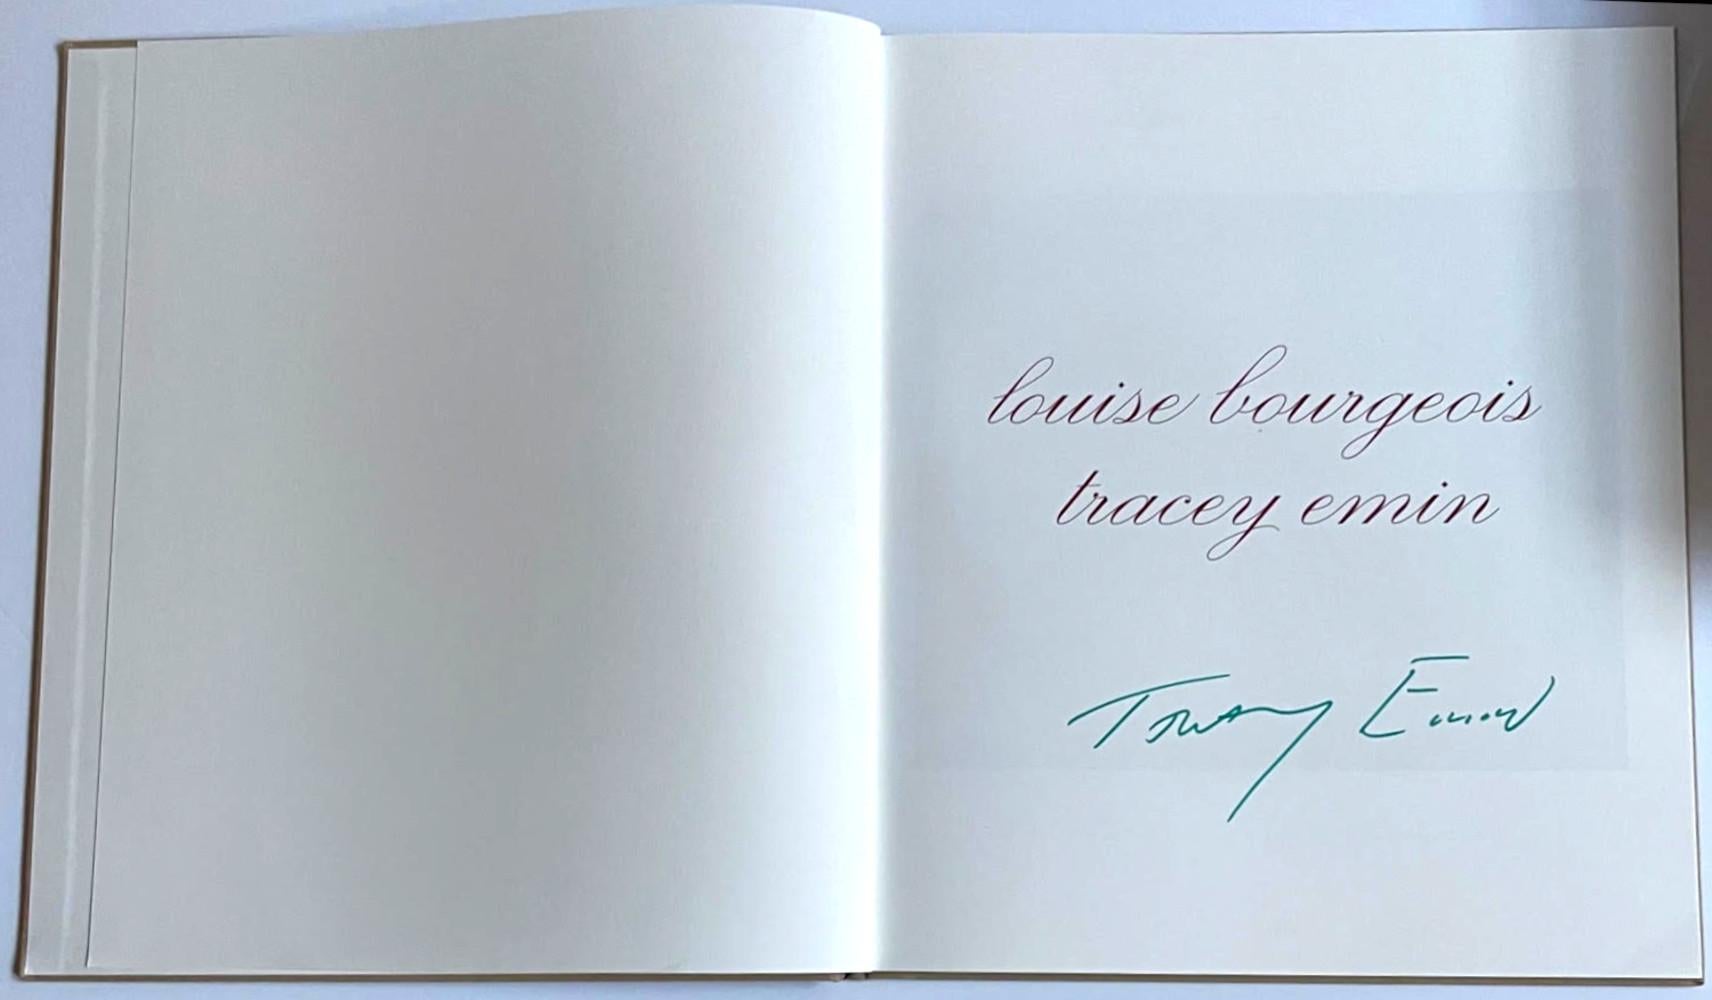 Do Not Abandon Me (Hand signiert mit grünem Marker von Tracey Emin) – Print von Louise Bourgeois & Tracey Emin